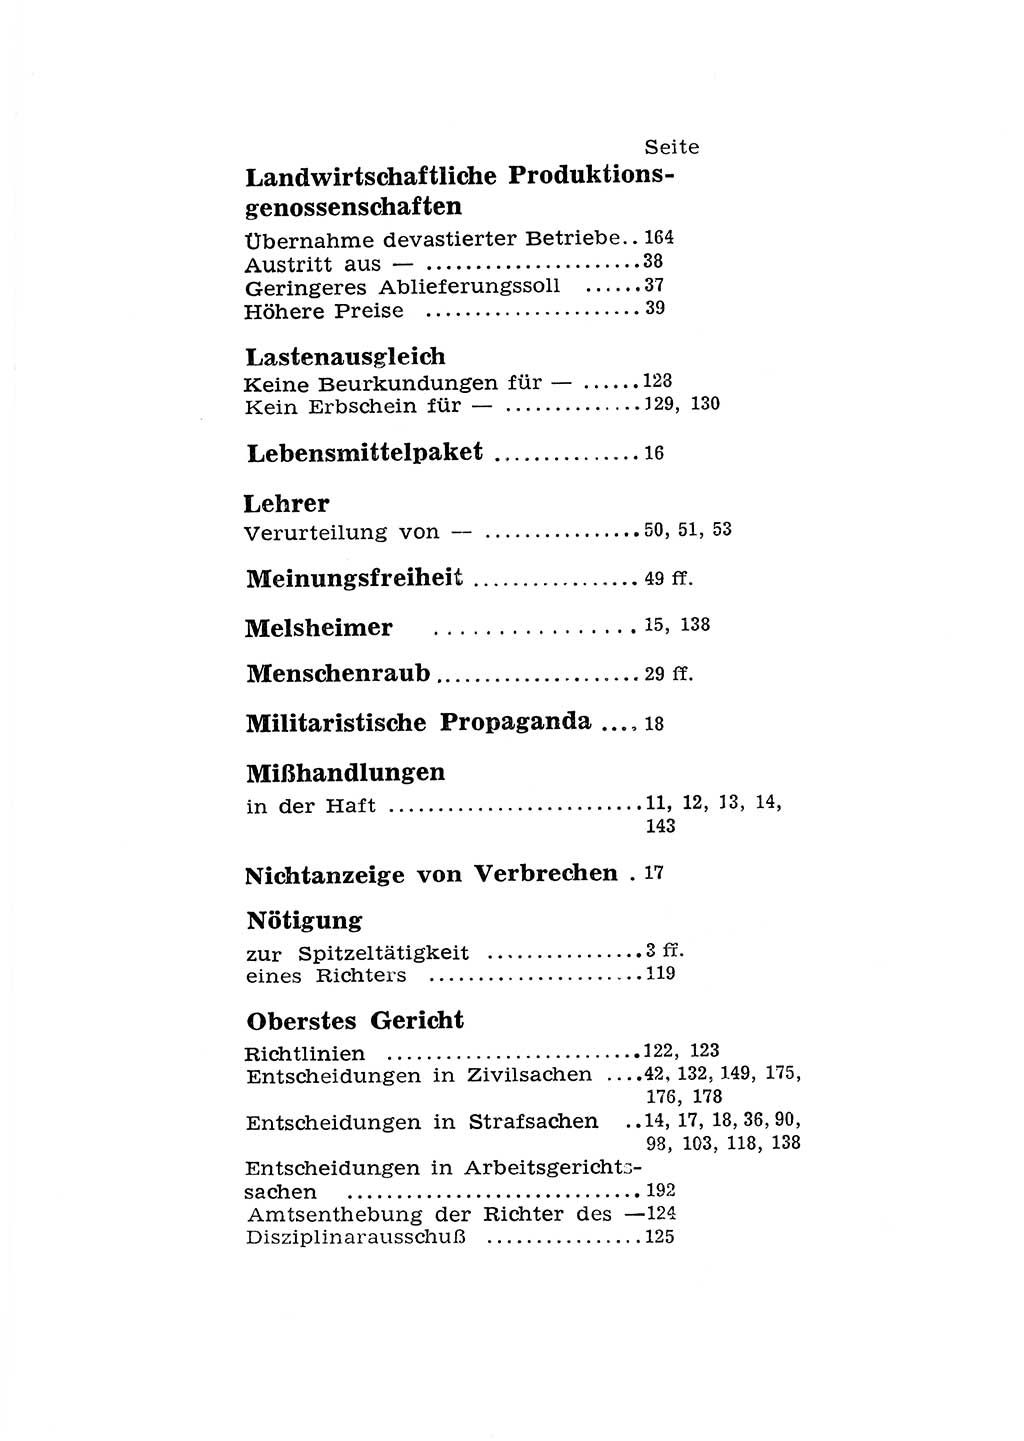 Katalog des Unrechts, Untersuchungsausschuß Freiheitlicher Juristen (UfJ) [Bundesrepublik Deutschland (BRD)] 1956, Seite 203 (Kat. UnR. UfJ BRD 1956, S. 203)